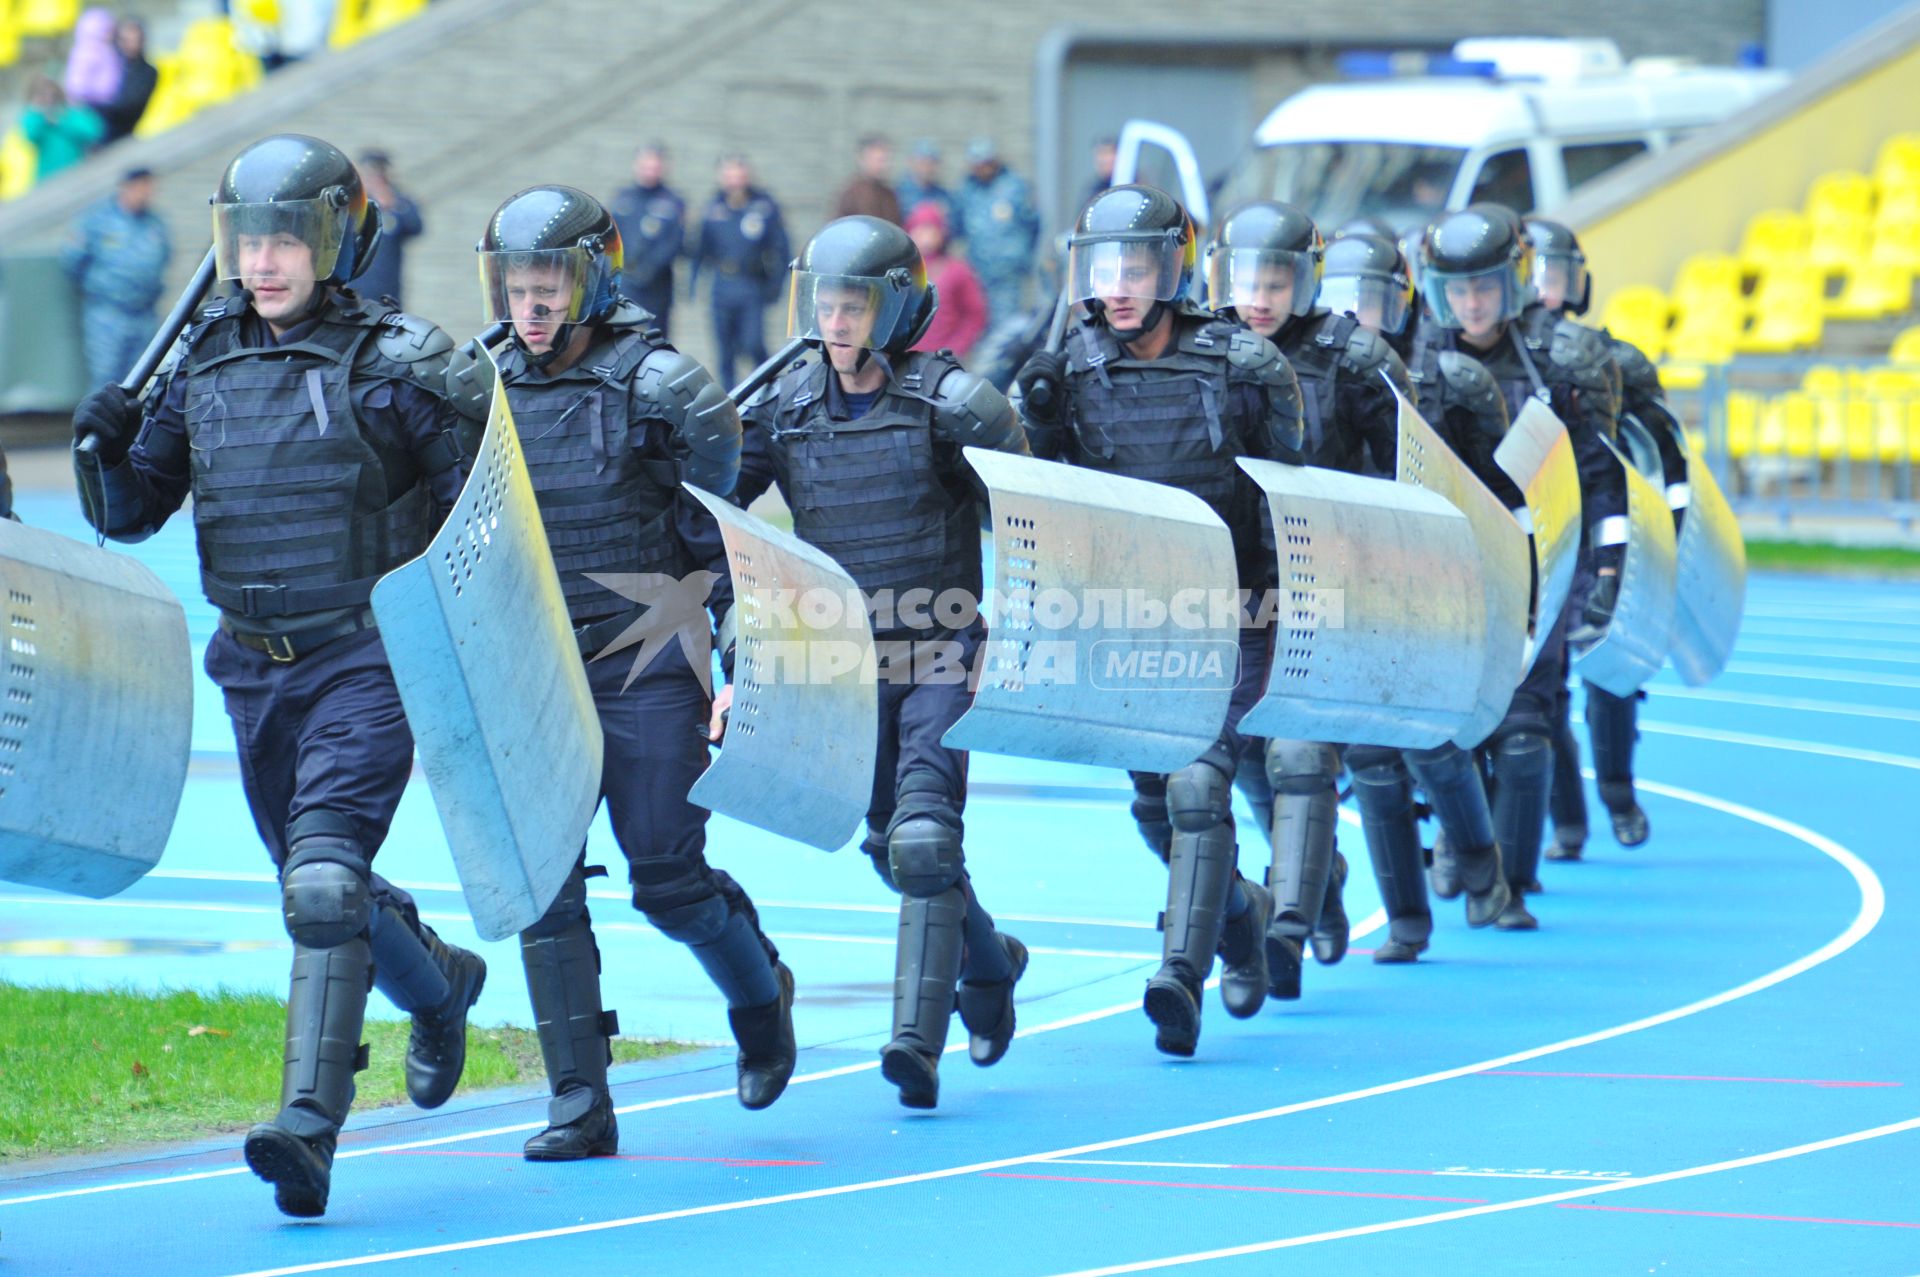 СК `Лужники`.  Спортивный праздник московской полиции. На снимке: показательные выступления бойцов ОМОНа.